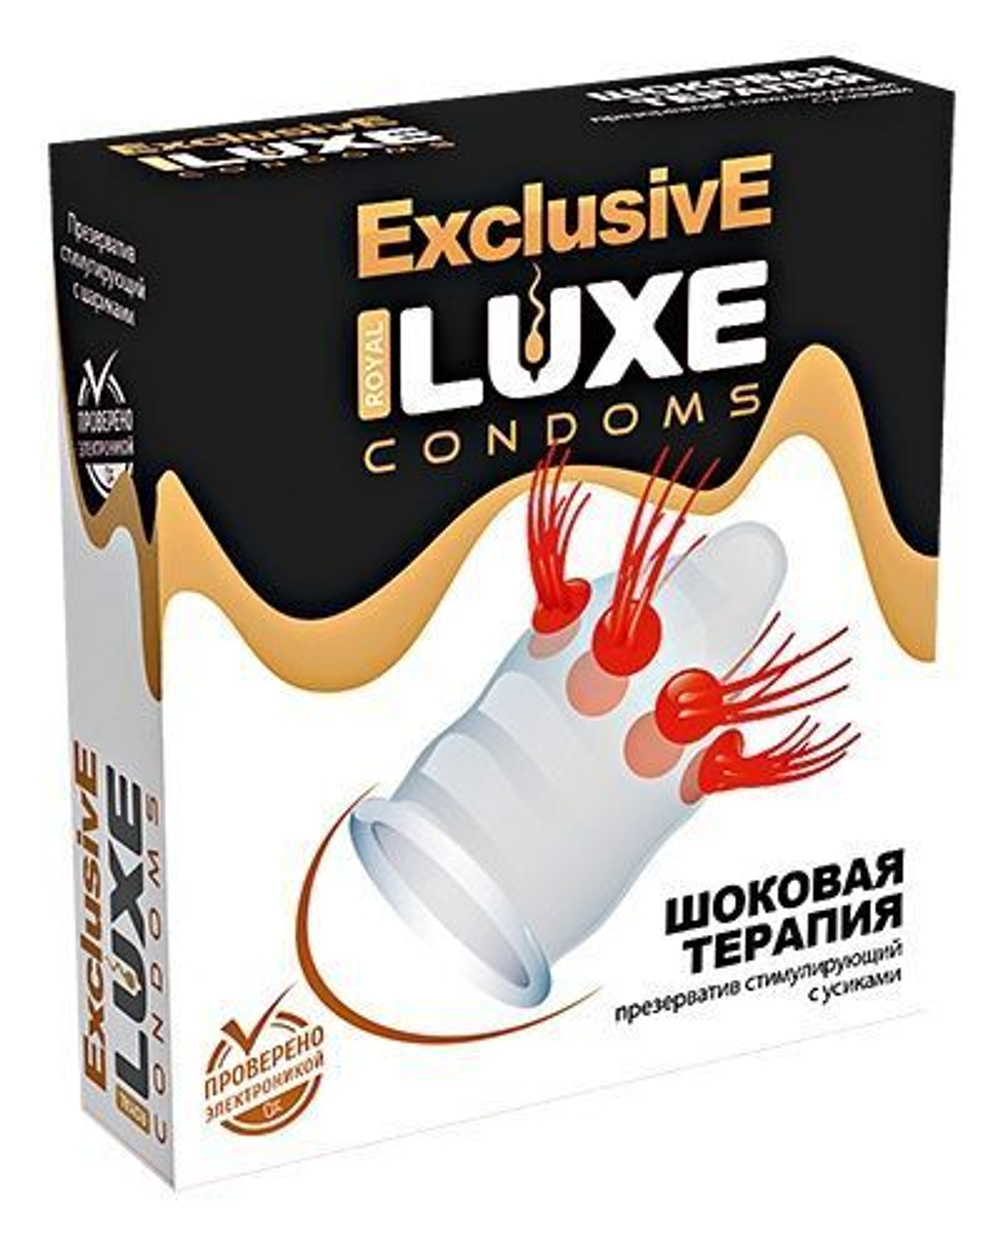 Презерватив LUXE Exclusive "Шоковая Терапия" - 1 шт